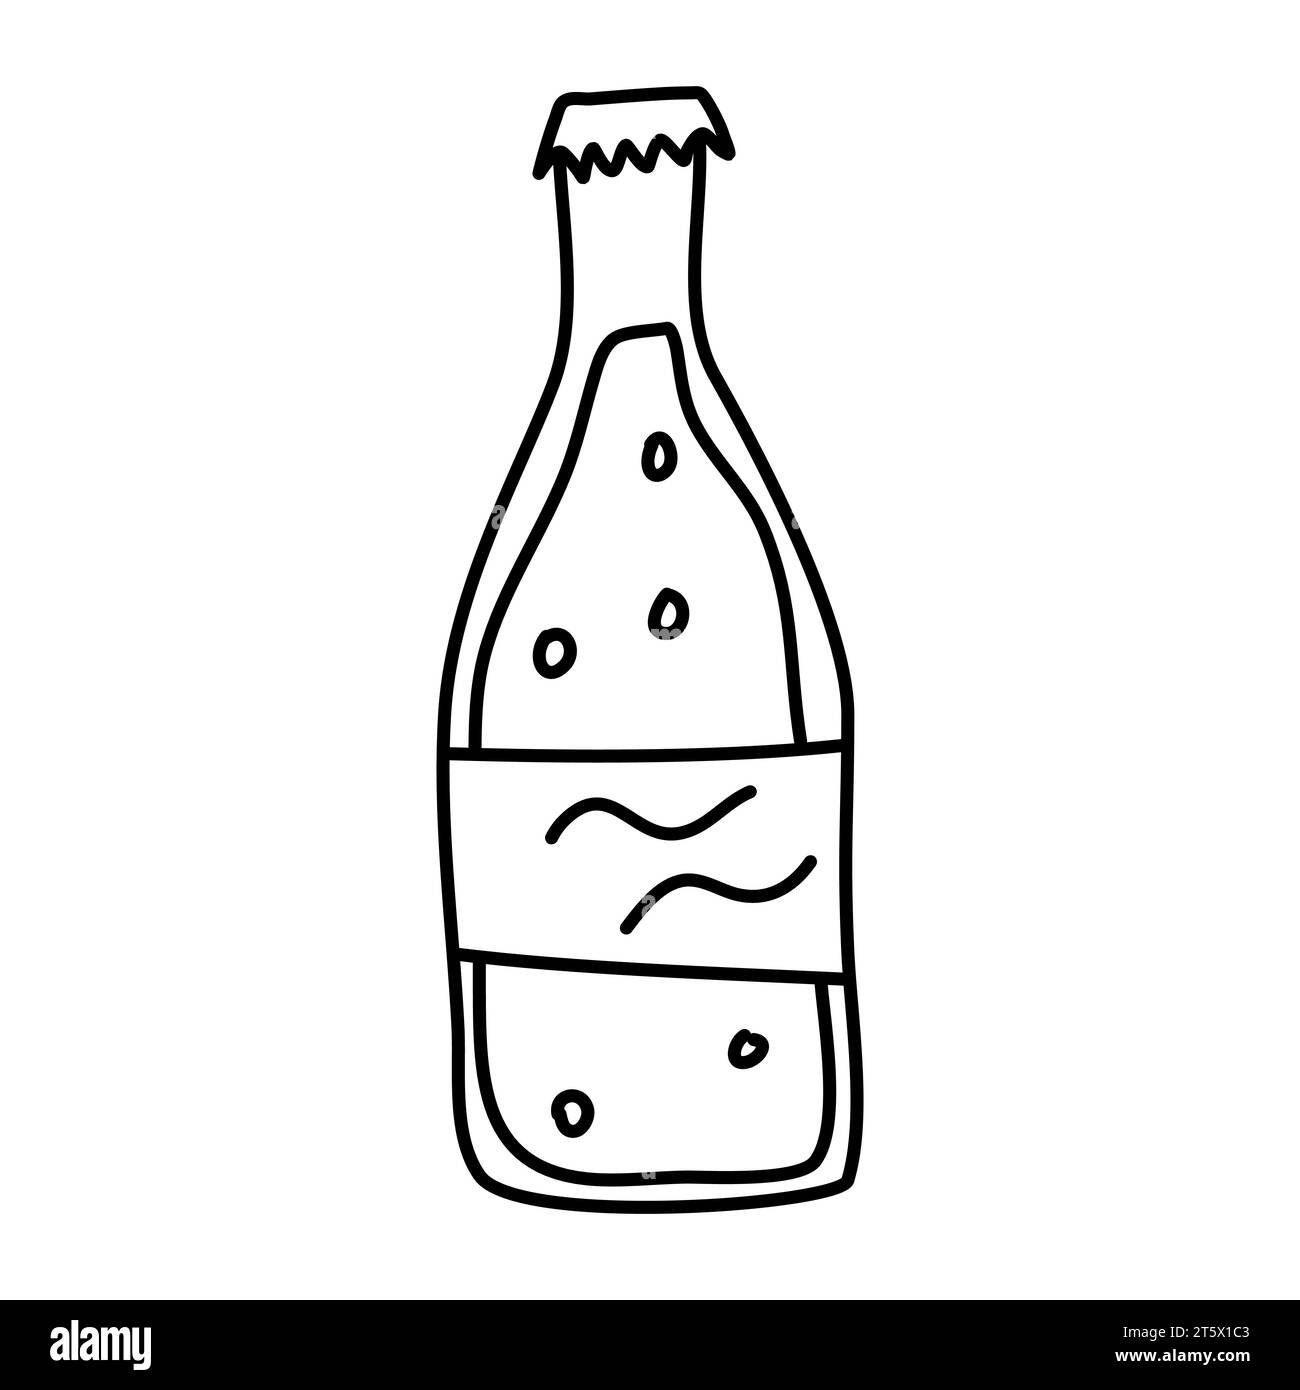 Doodle-Bild der Limonade-Flasche. Handgezeichnete Vektorgrafik. Stock Vektor